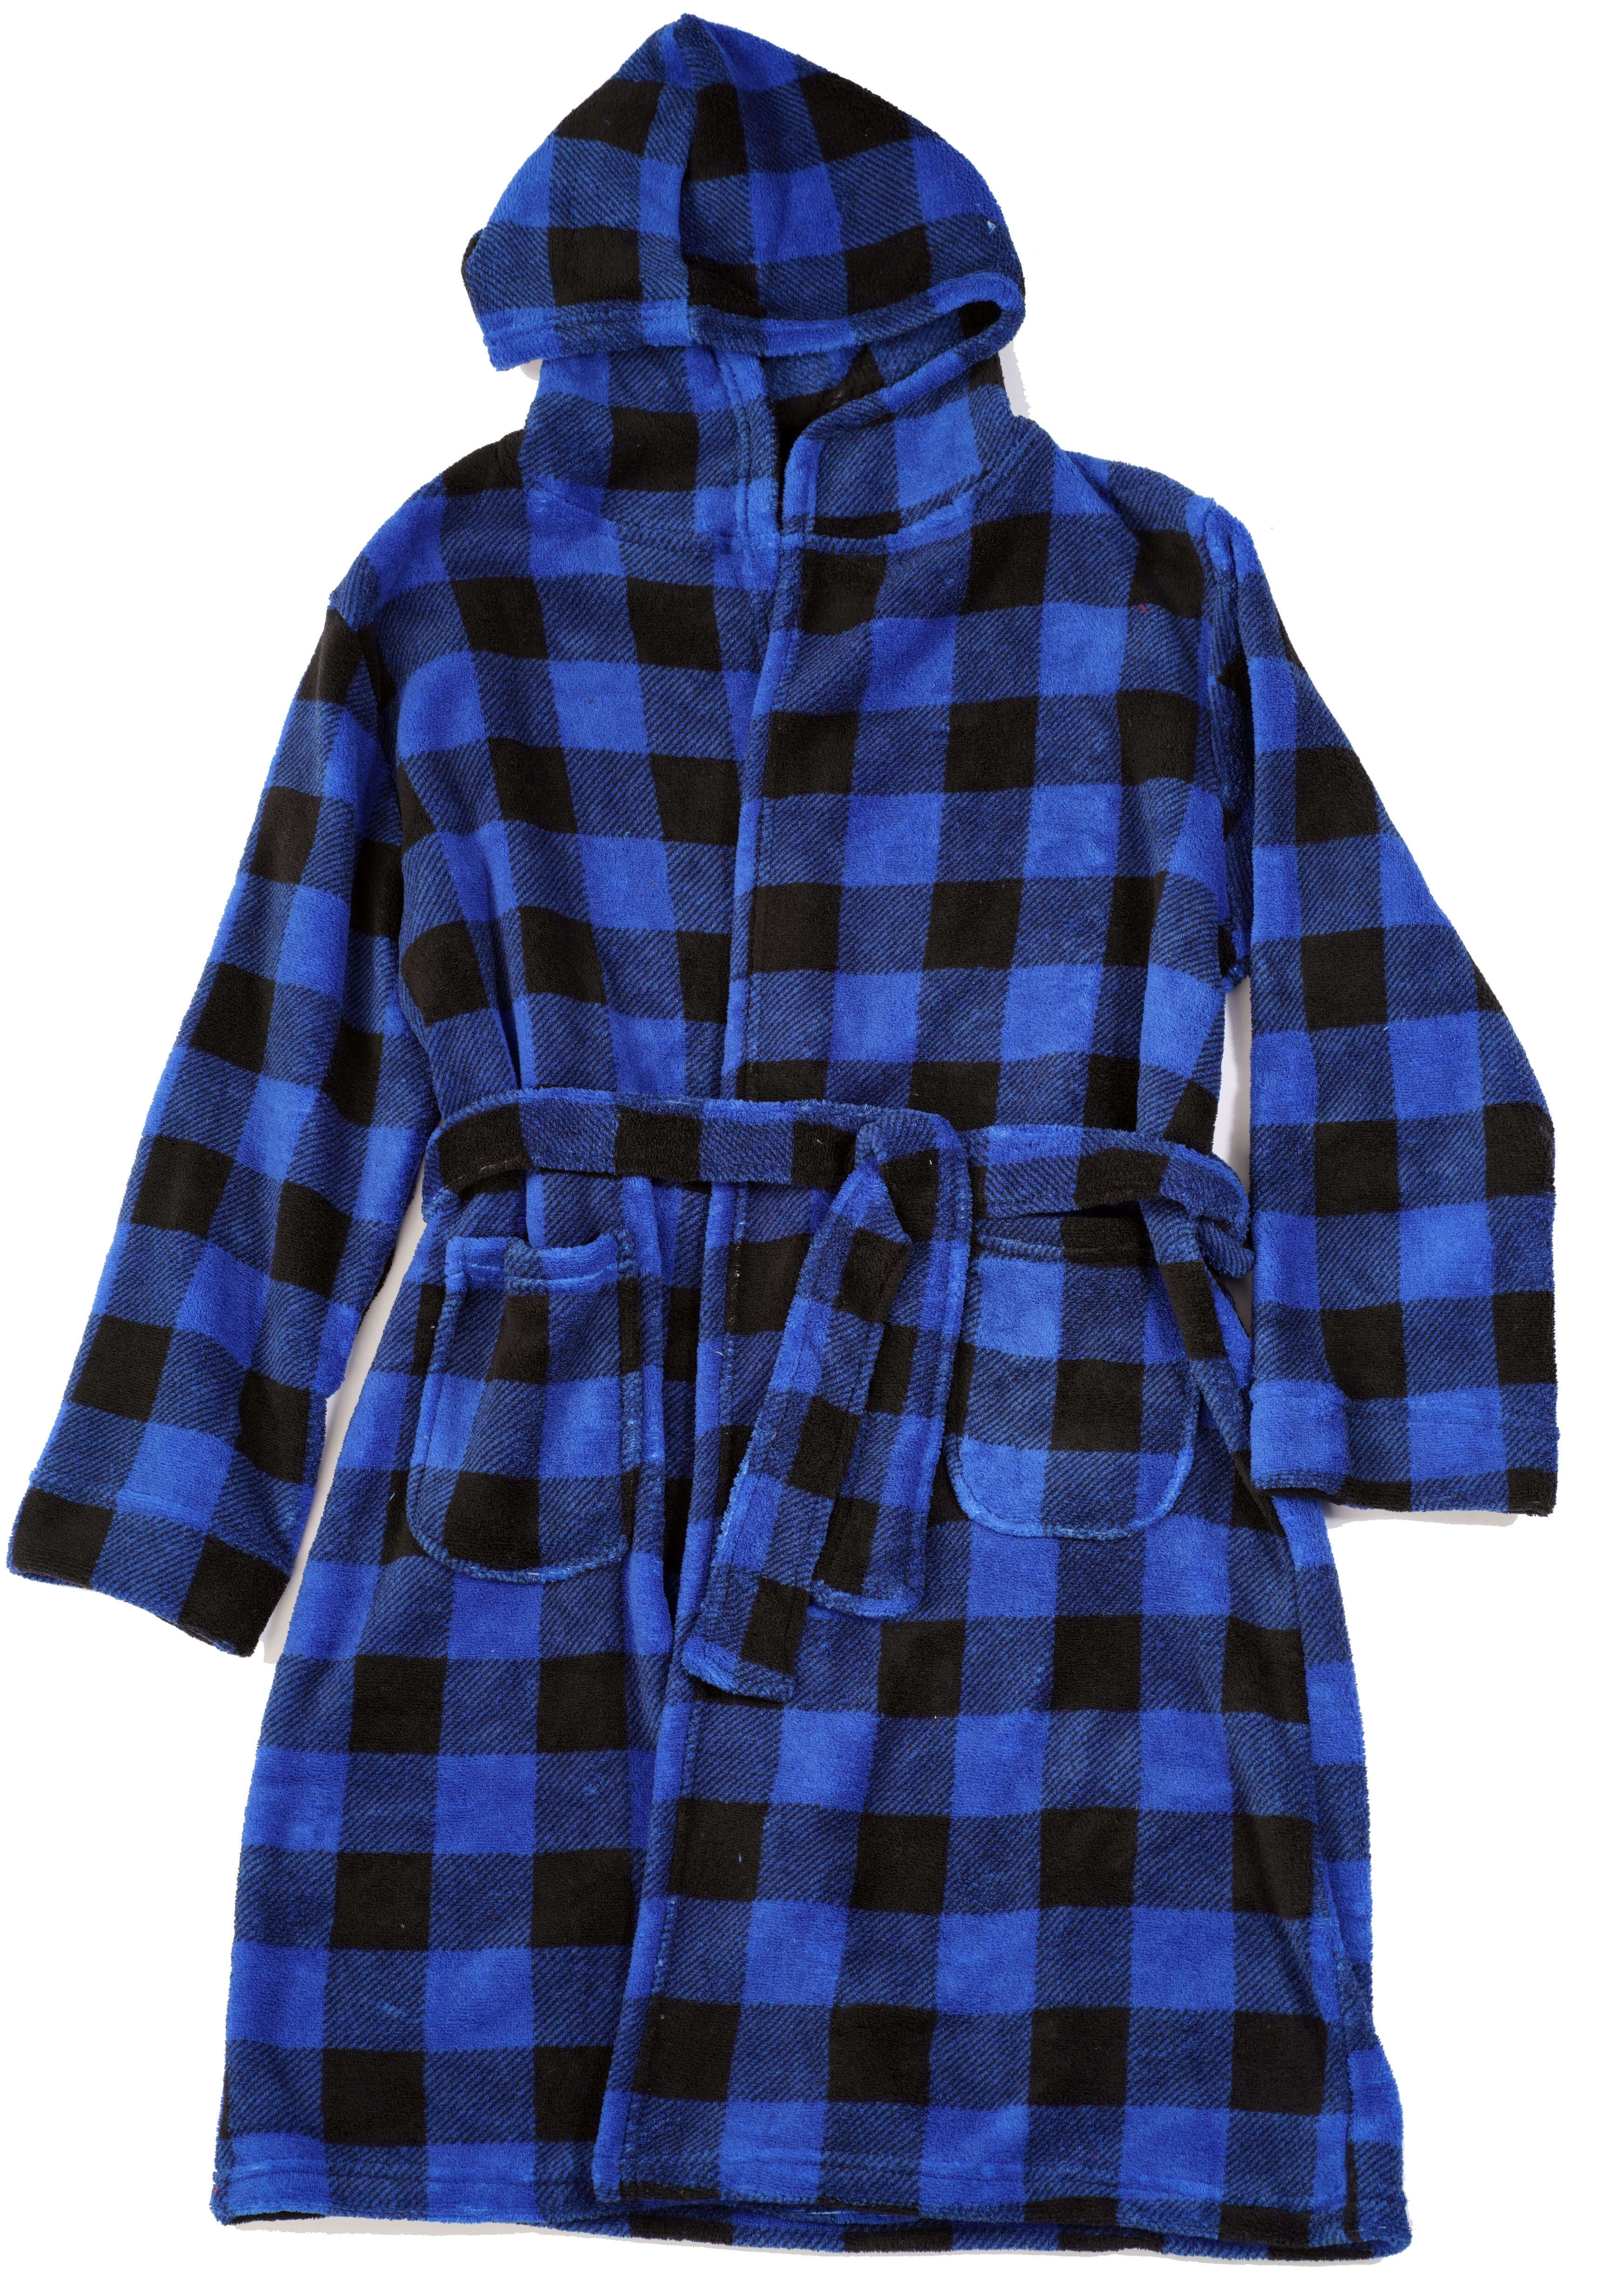 Robes for Boys 75508-7-10-12 Prince of Sleep Fleece Robe 